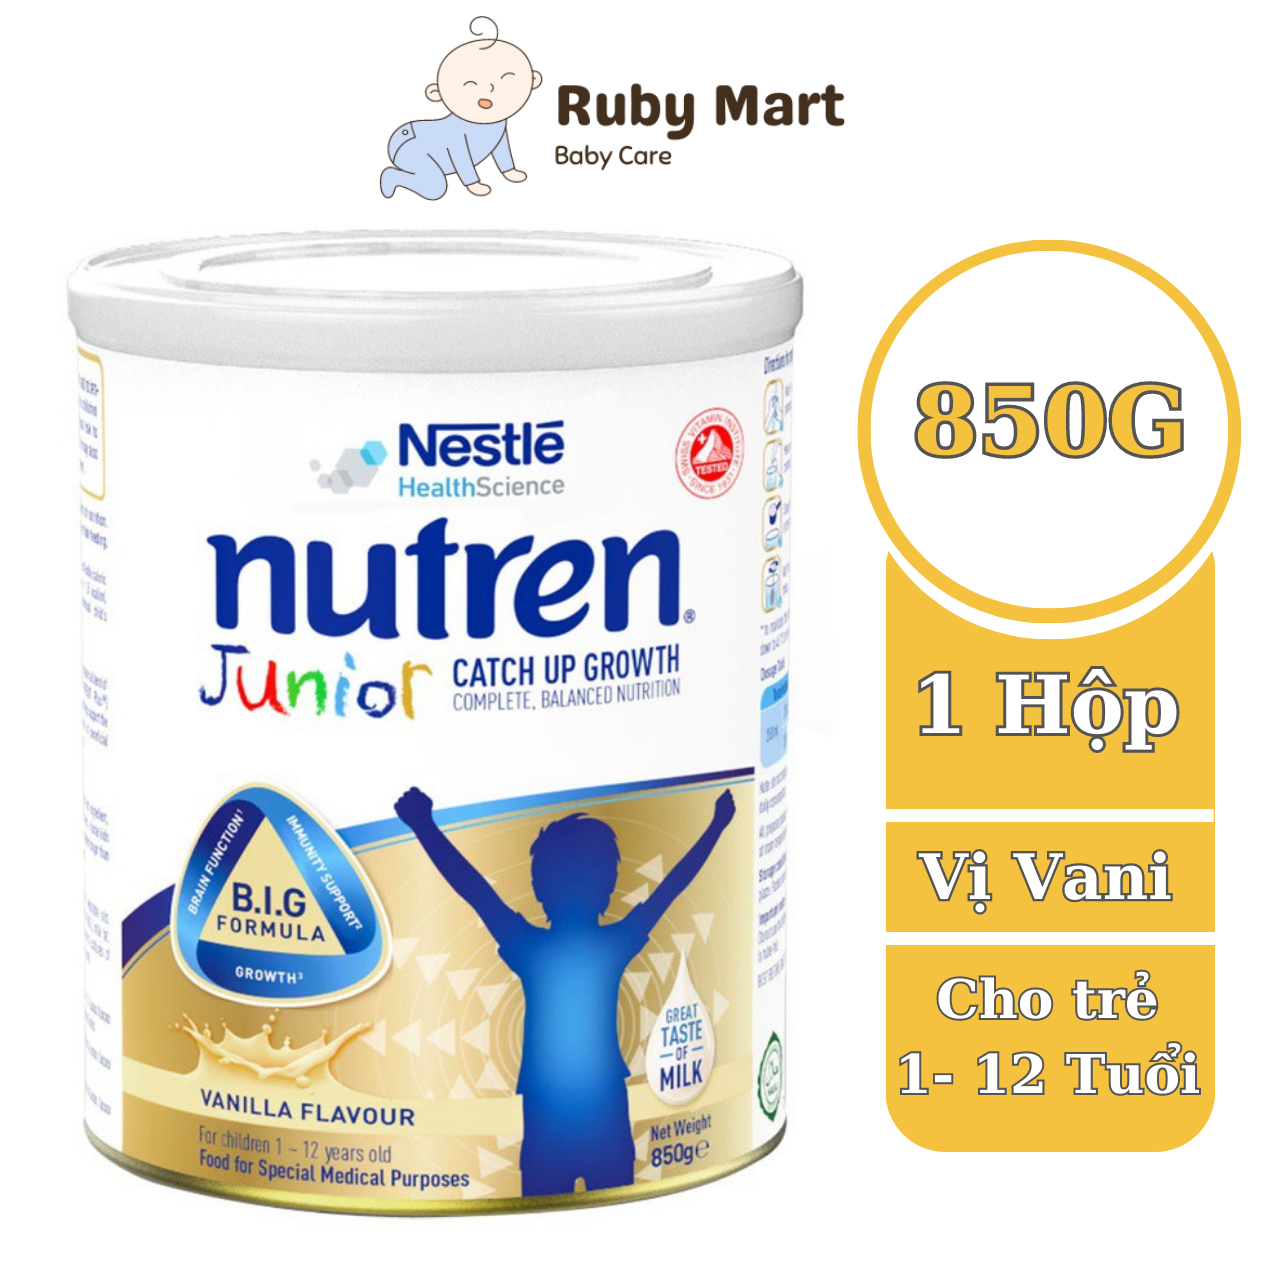 Sữa Bột Nutren Junior Nestle Thụy Sĩ 850g hỗ trợ tăng cân tốt cho hệ tiêu